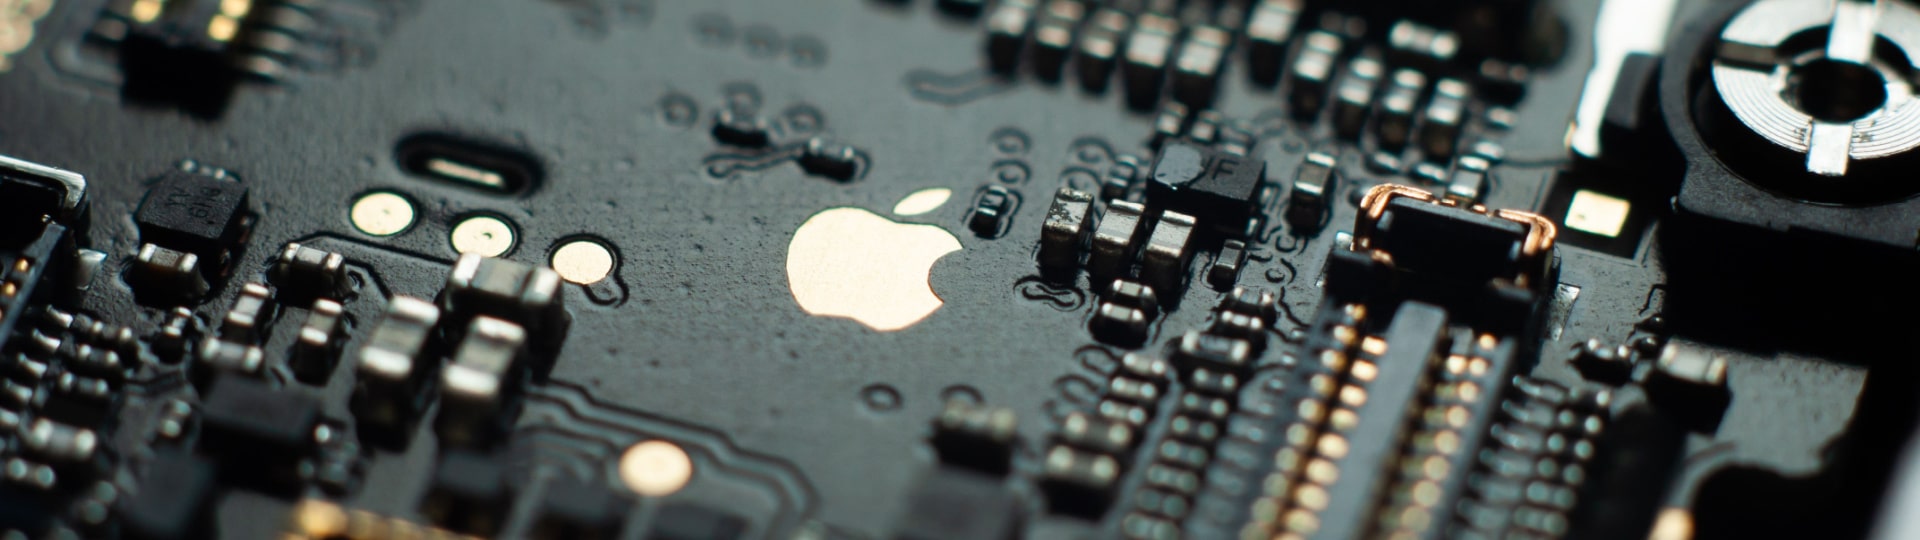 Apple investuje další miliardu eur do vývojového centra v Mnichově